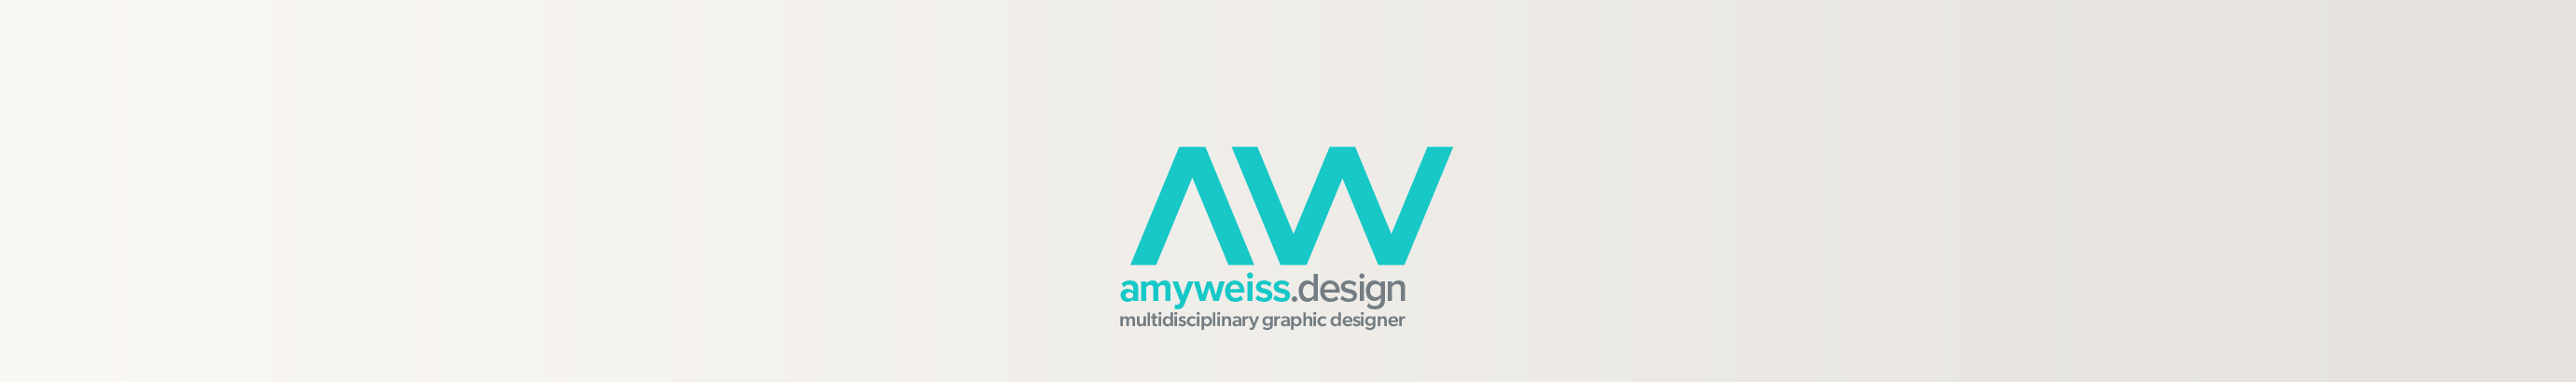 Amy Weisss profilbanner